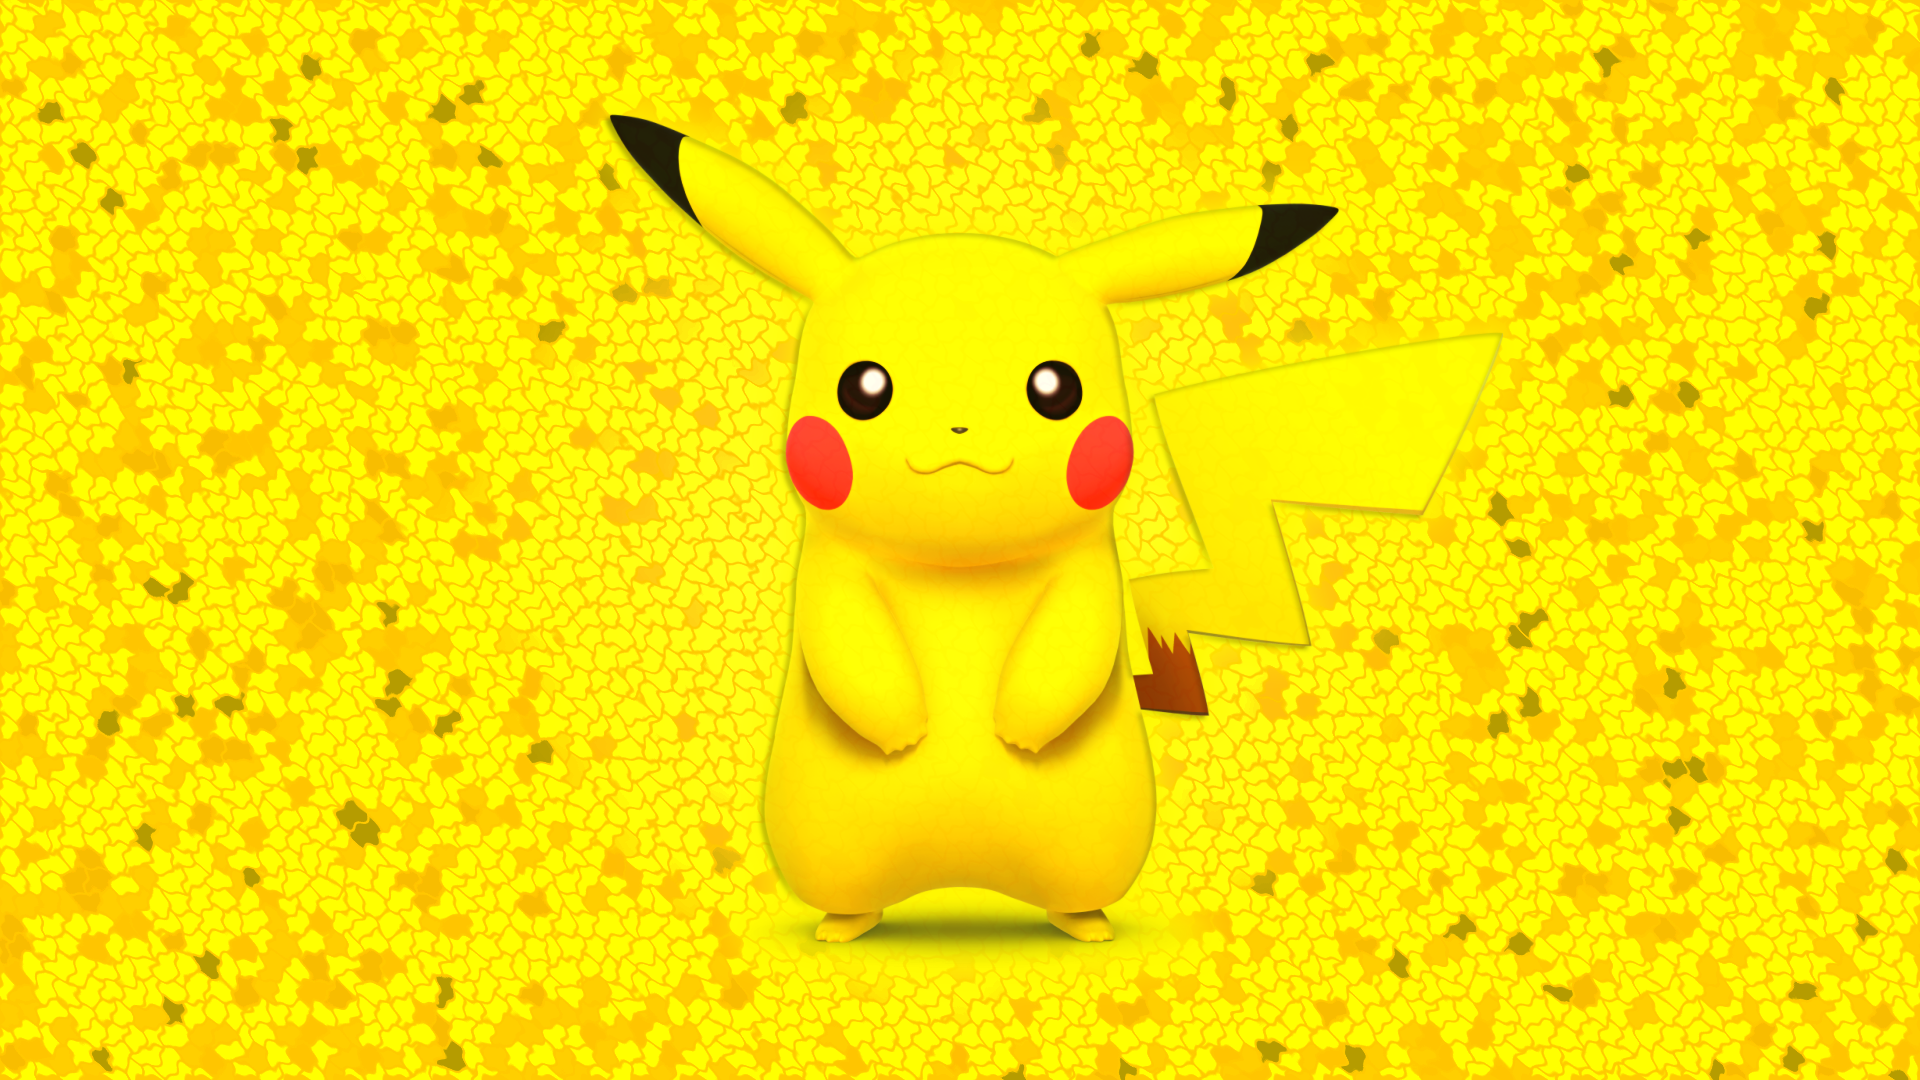 Pikachu Pokemon Face Wallpaper